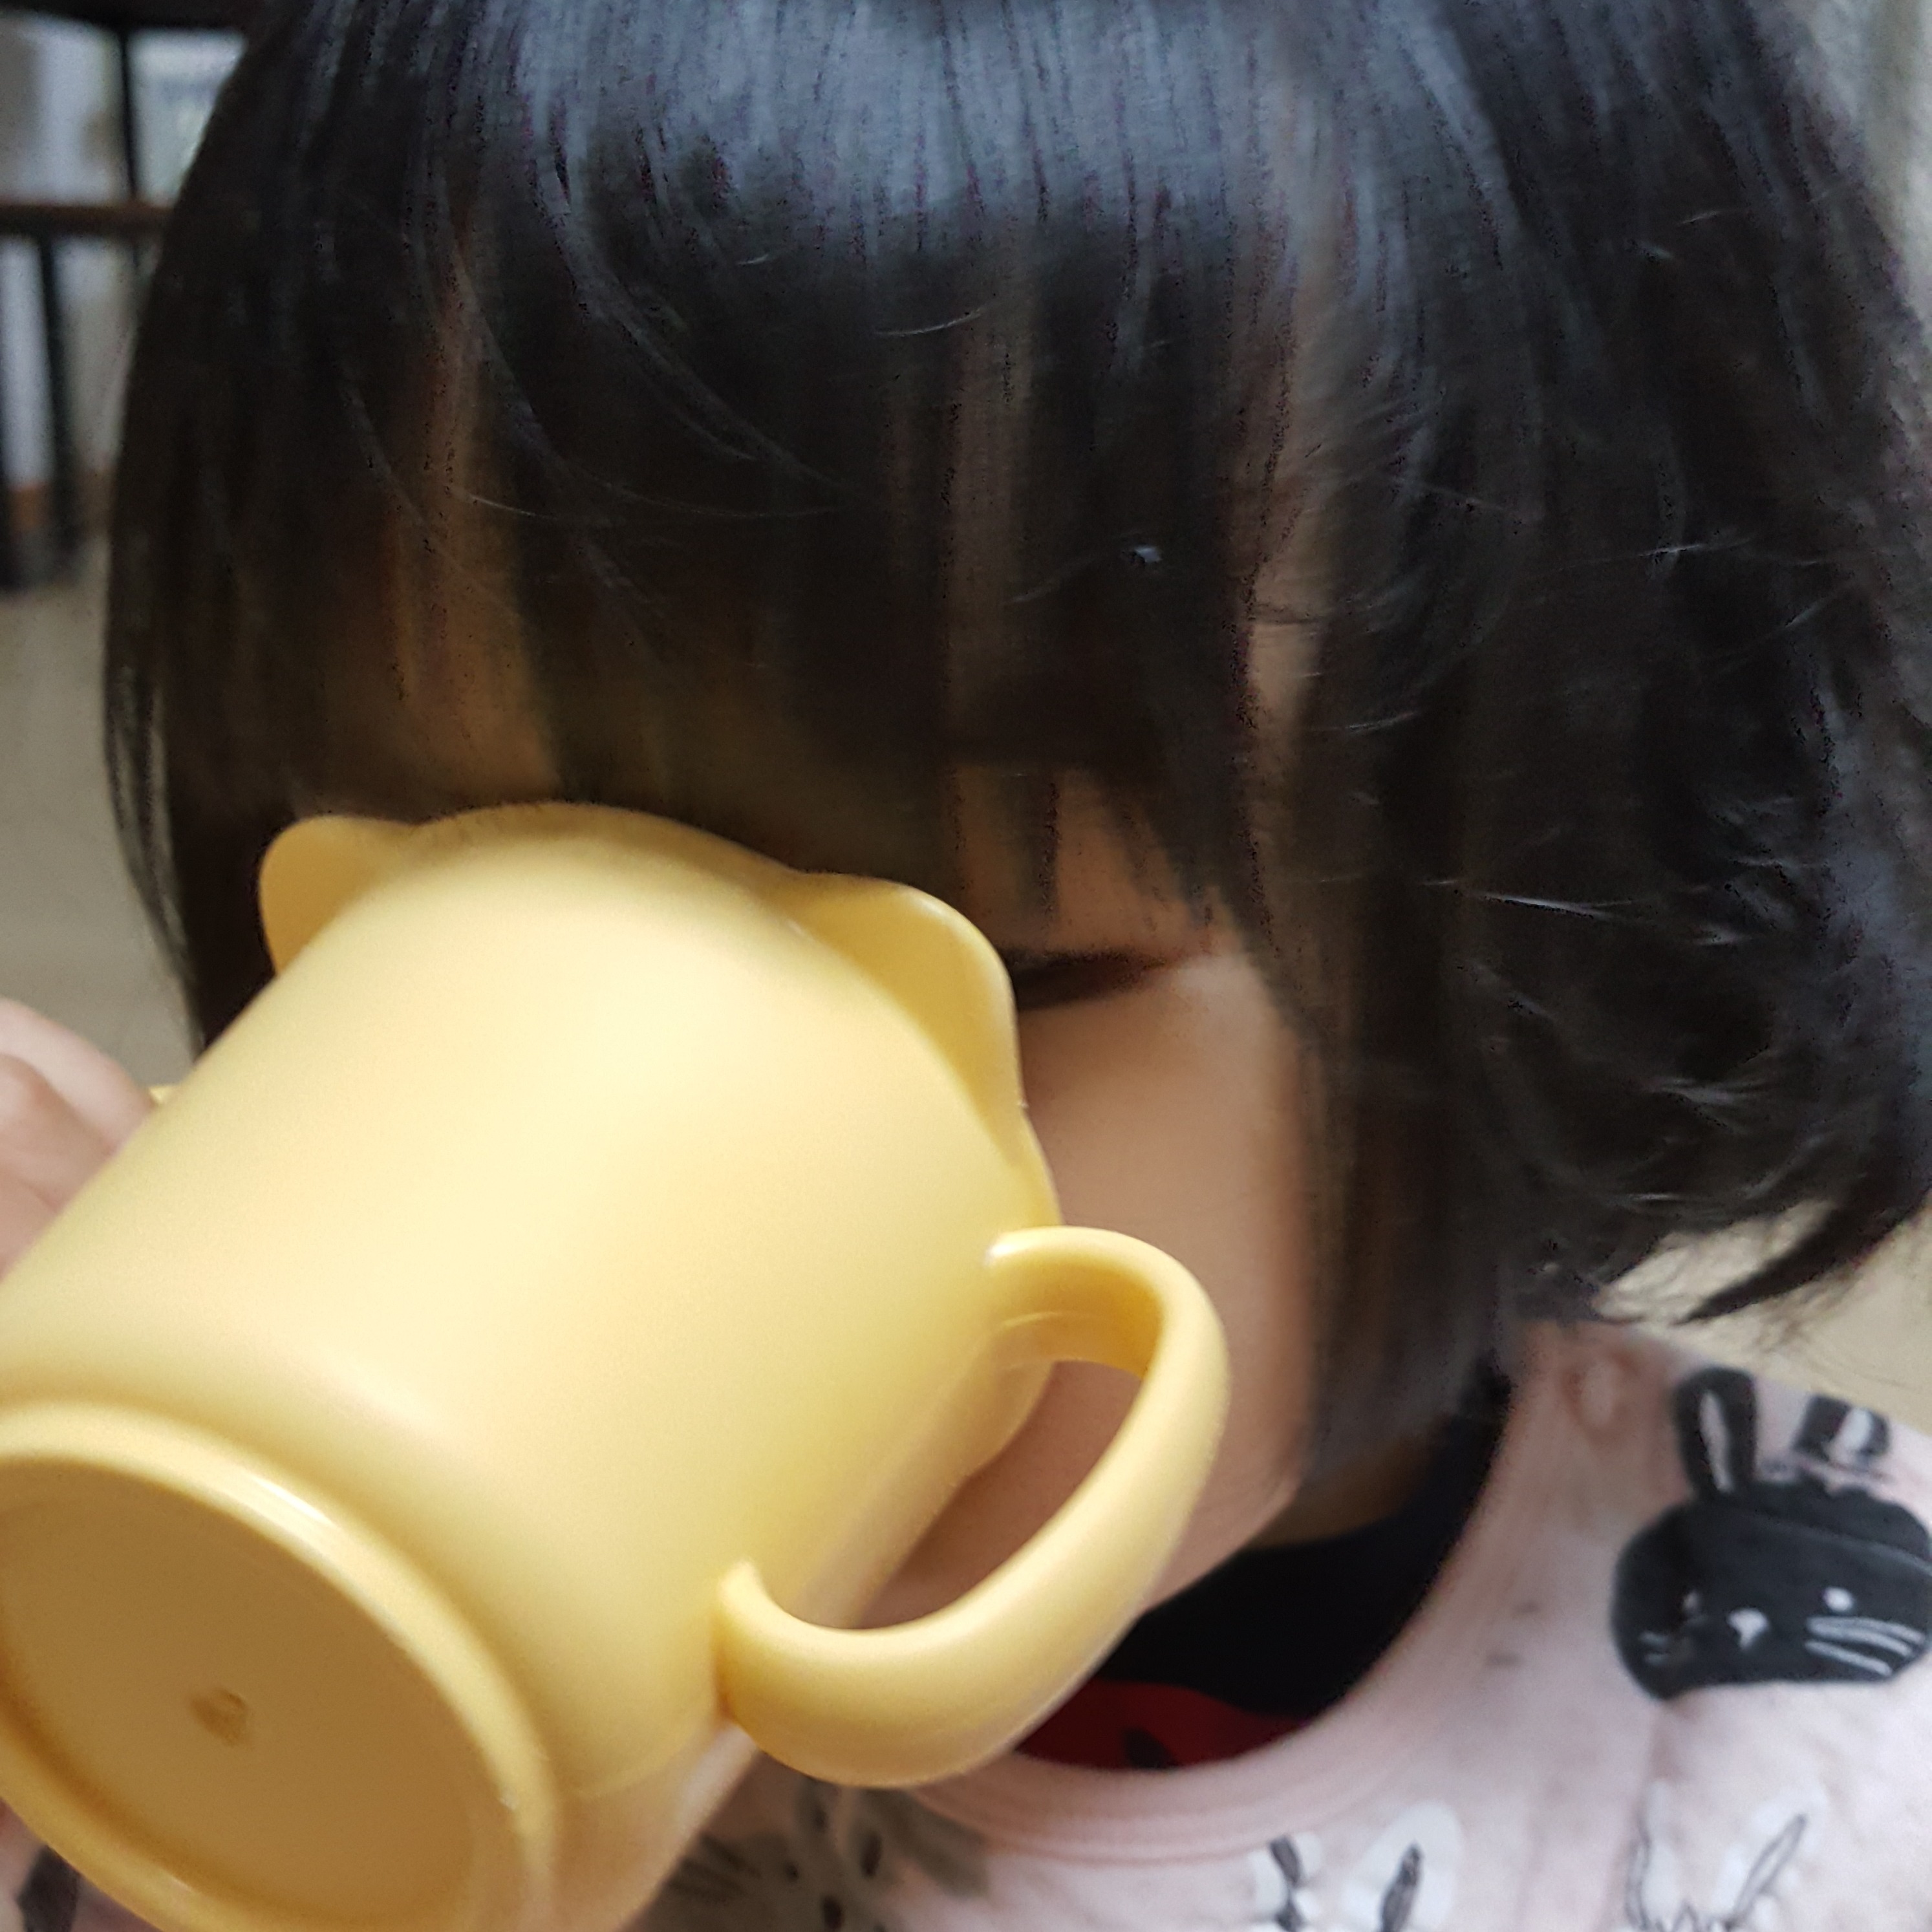 아이가-컵에-도라지배즙을-마시고-있습니다.